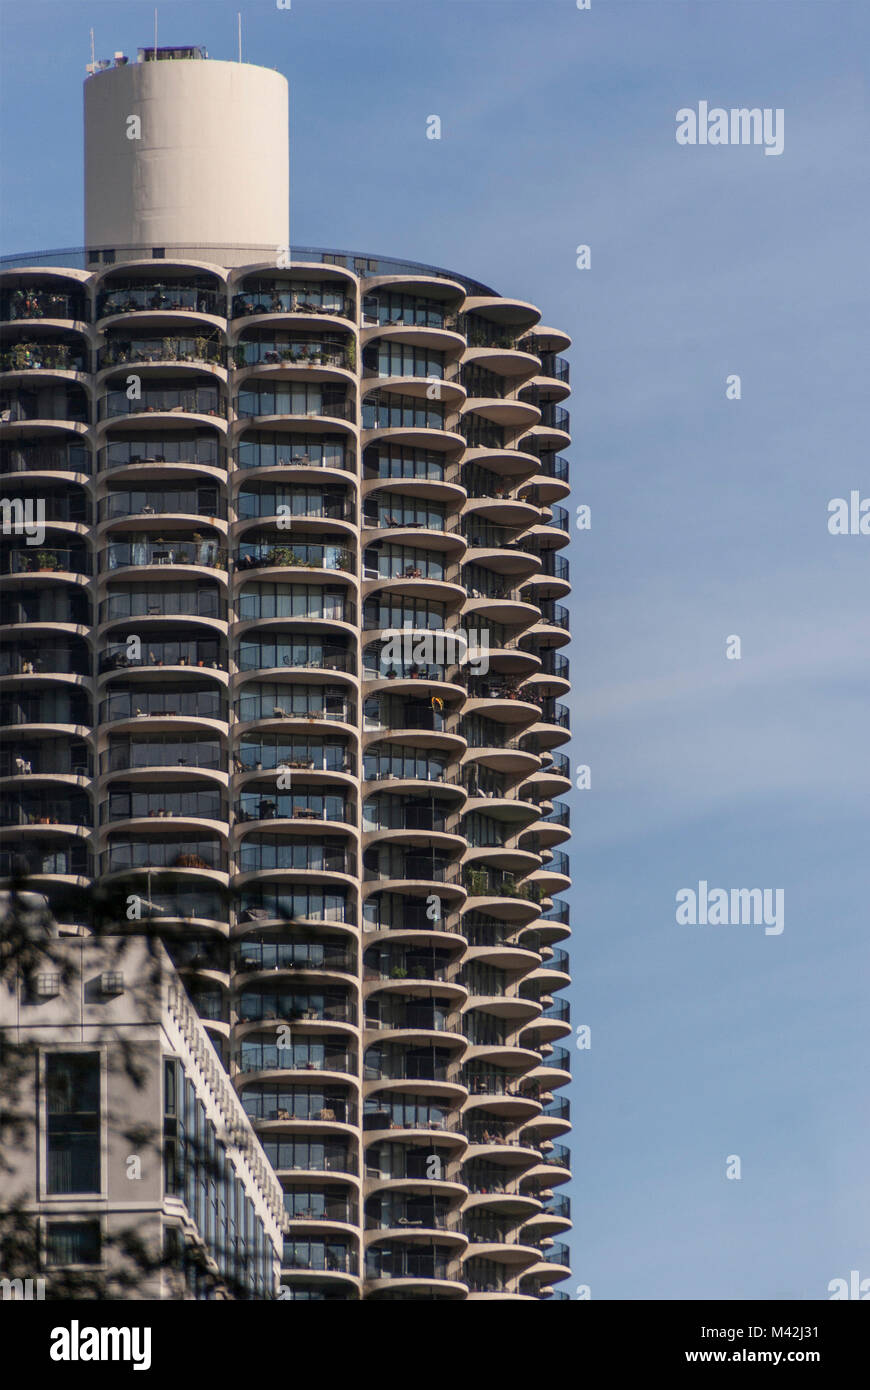 Dettaglio Marina City torri, progettato da eng. Bertand Goldberg con la sua sequenza geometrica delle terrazze arrotondato. Chicago, Stati Uniti d'America Foto Stock